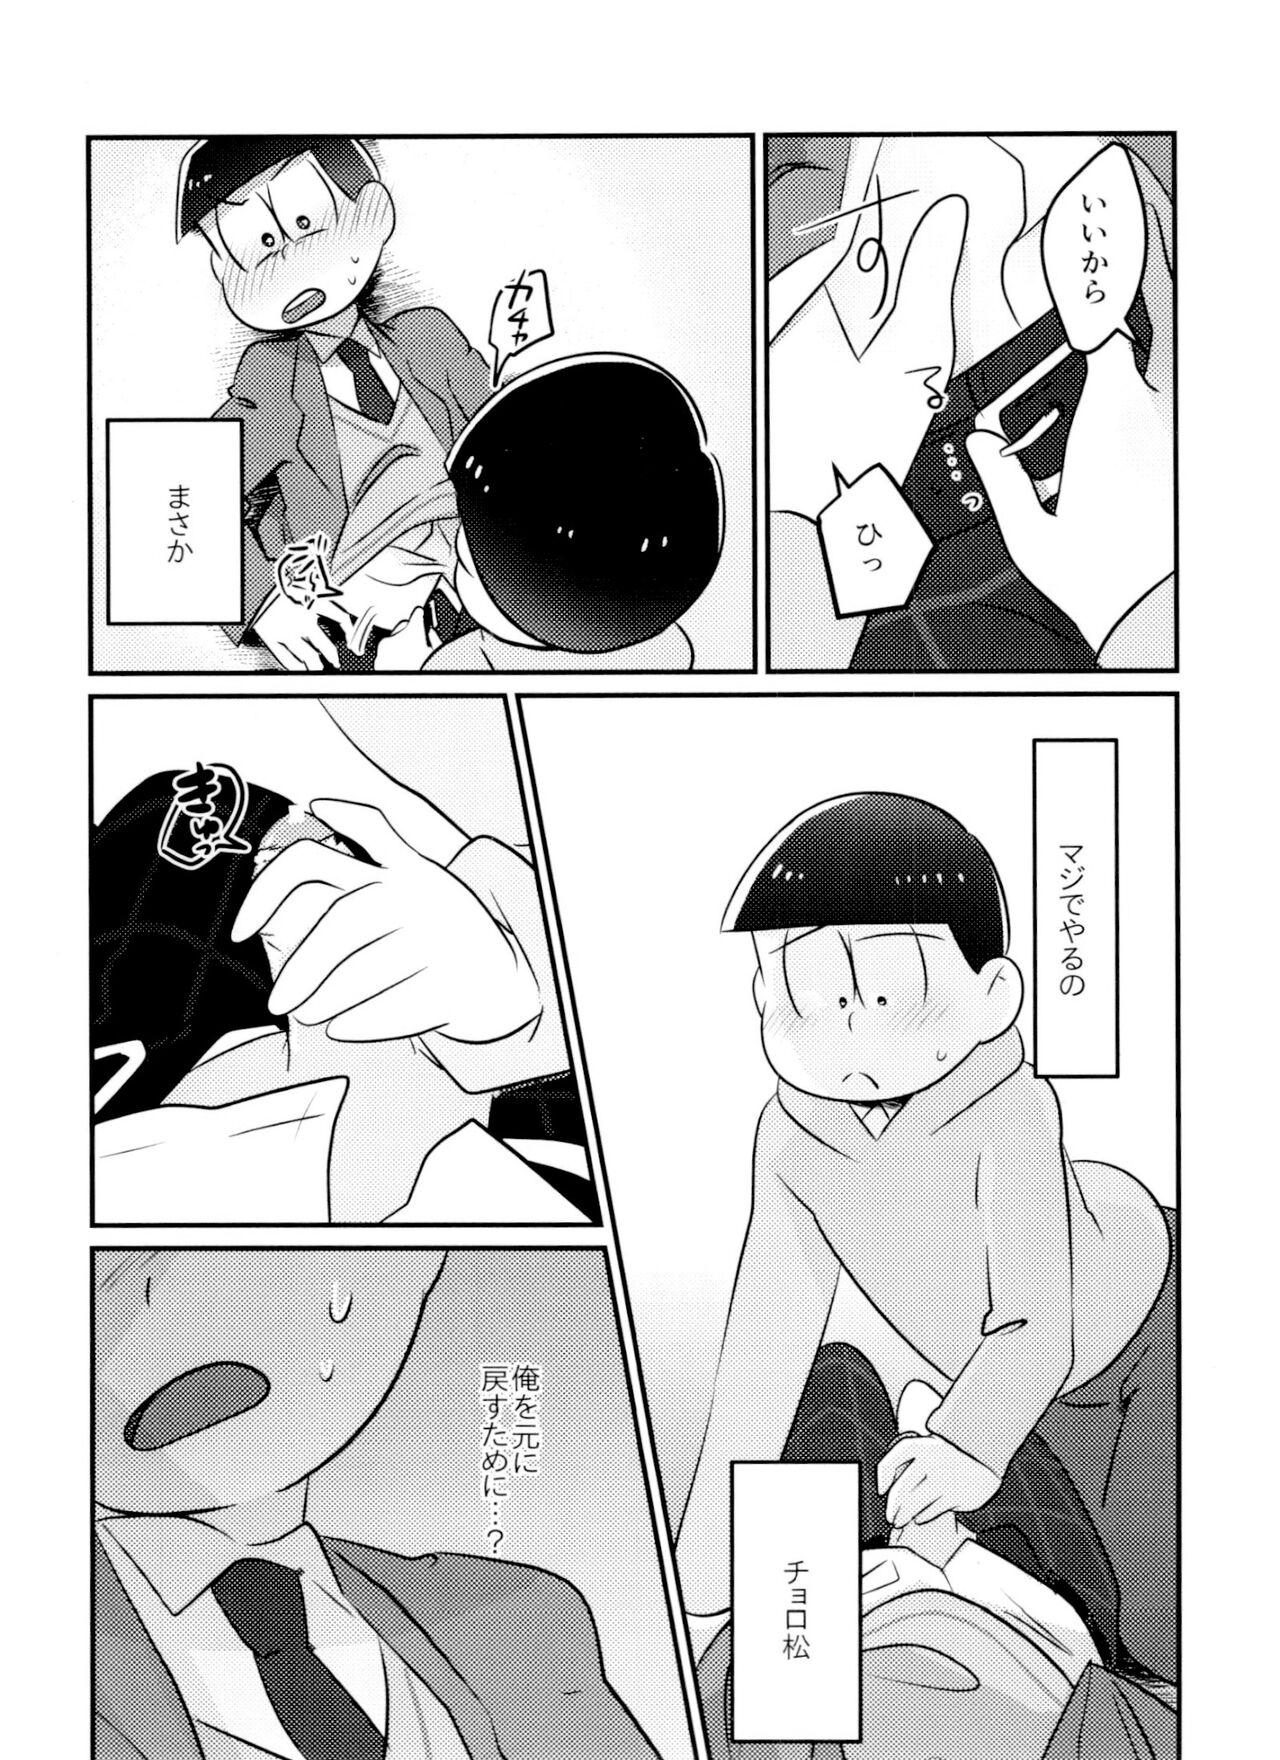 Vergon Kimi wa itsu kara otonana no!? - Osomatsu-san Cousin - Page 8